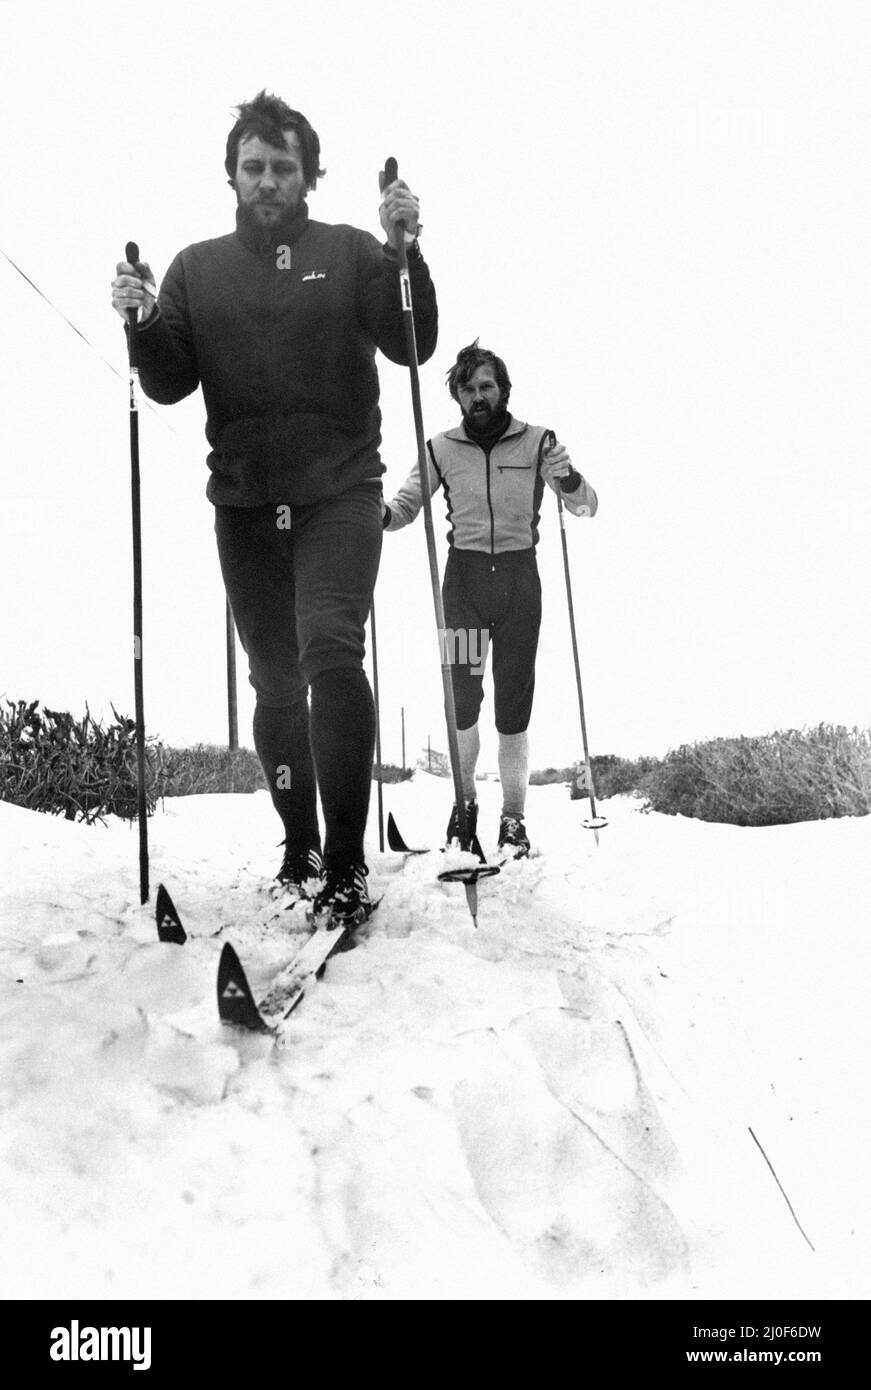 La patrouille de ski de l'Atlantic College, dirigée par un membre du personnel norvégien, Ivar Lund-Mathieson, et son collègue David Hofman, aide la police et les services d'urgence à patrouiller la vallée de Glamourgan et à vérifier les chalets et les fermes isolés. Leur aide a été très appréciée et il y a eu quelques agriculteurs surpris quand ils ont été confrontés à l'étrange vue alpine des hommes sur des skis dans le sud du pays de Galles, 23rd Febuary 1978. Banque D'Images